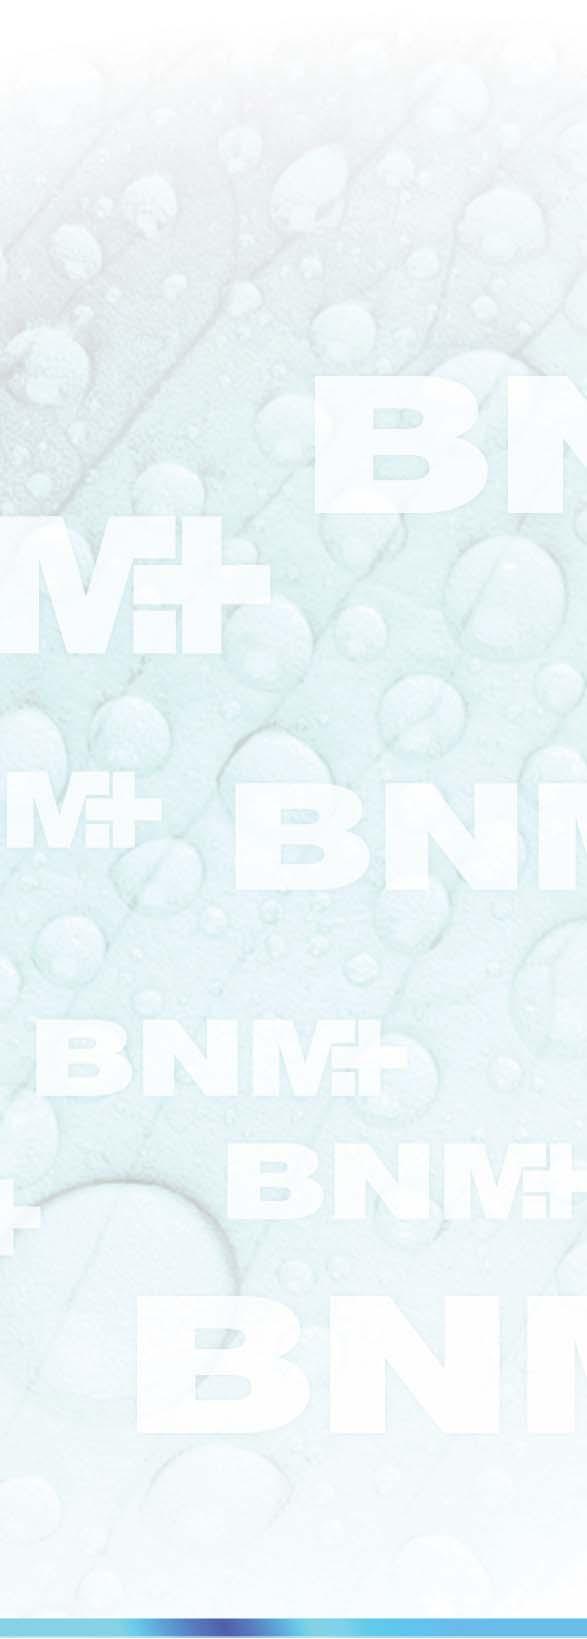 Bemutatkozás A BNM azért jött létre, hogy olyan minőségi egészségmegőrző és gyógyászati termékek gyártására